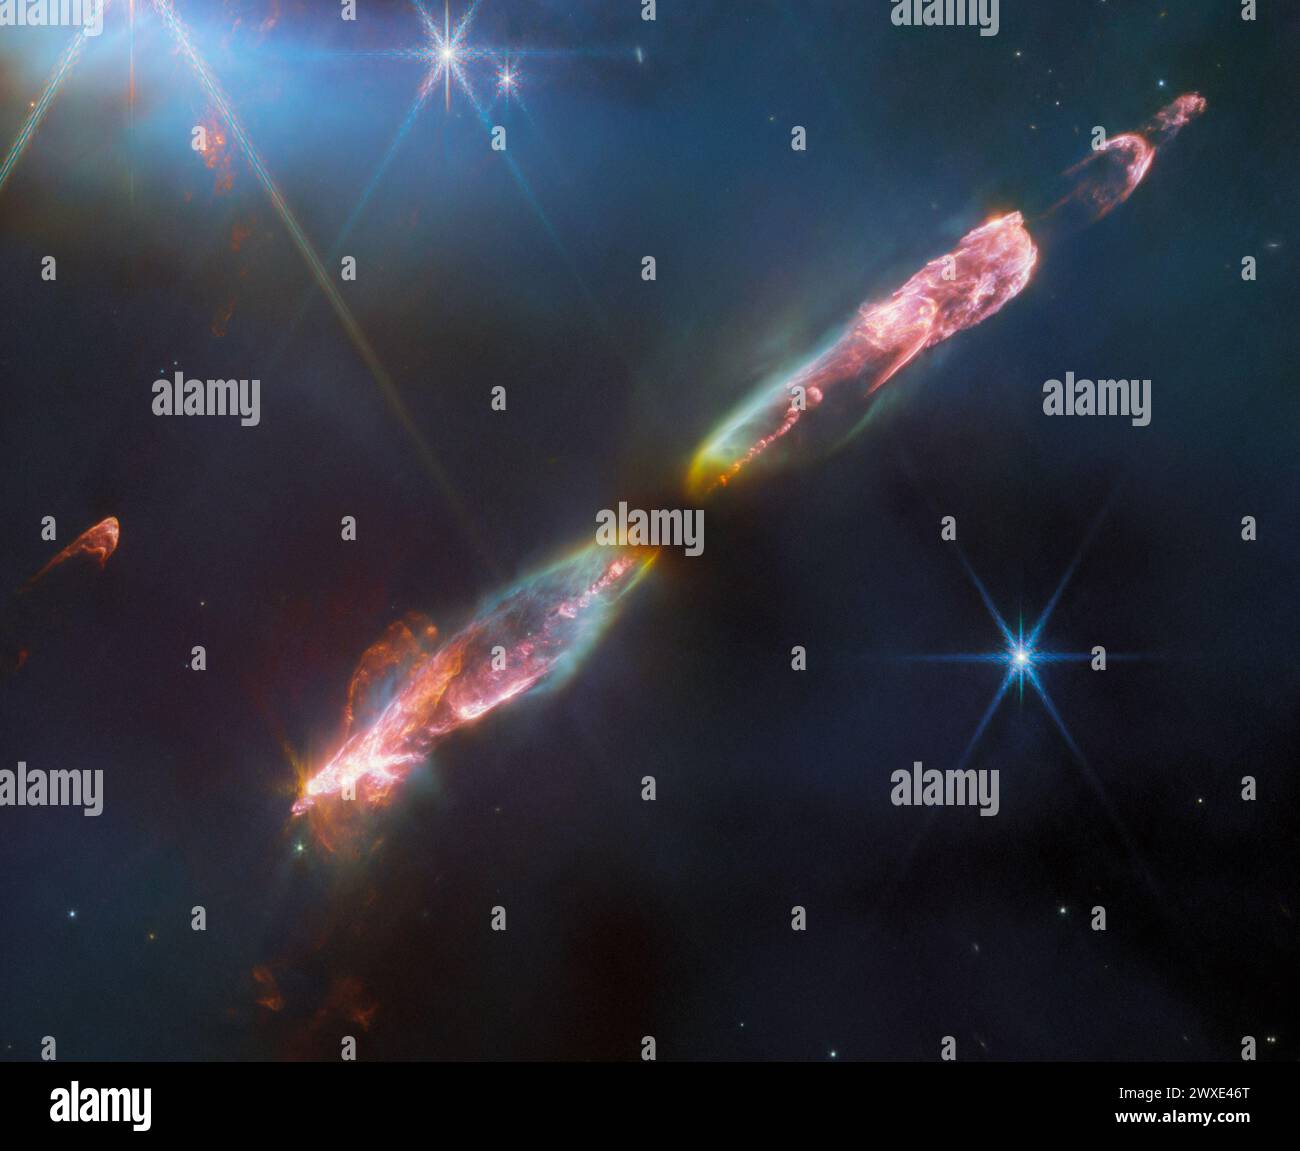 NASA Webb schnappt den Überschallausfluss von Young Star. Ein neugeborener Stern mit Überschallgasstrahlen, die aus seinen Polen spucken. Es ist hier nur ein paar Zehntausende Jahre alt, aber wenn es groß wird, wird es wie unsere Sonne sein. Helle Regionen um neugeborene Sterne, wie hier zu sehen, werden Herbig-Haro-Objekte genannt. Dieses spezifische Herbig-Haro-Objekt wird Herbig-Haro (HH) 211 genannt. In etwa 1.000 Lichtjahren Entfernung von der Erde ist es eines der jüngsten und nächsten Objekte seiner Art. Quelle: ESA/Webb, NASA, CSA, T.Ray Stockfoto